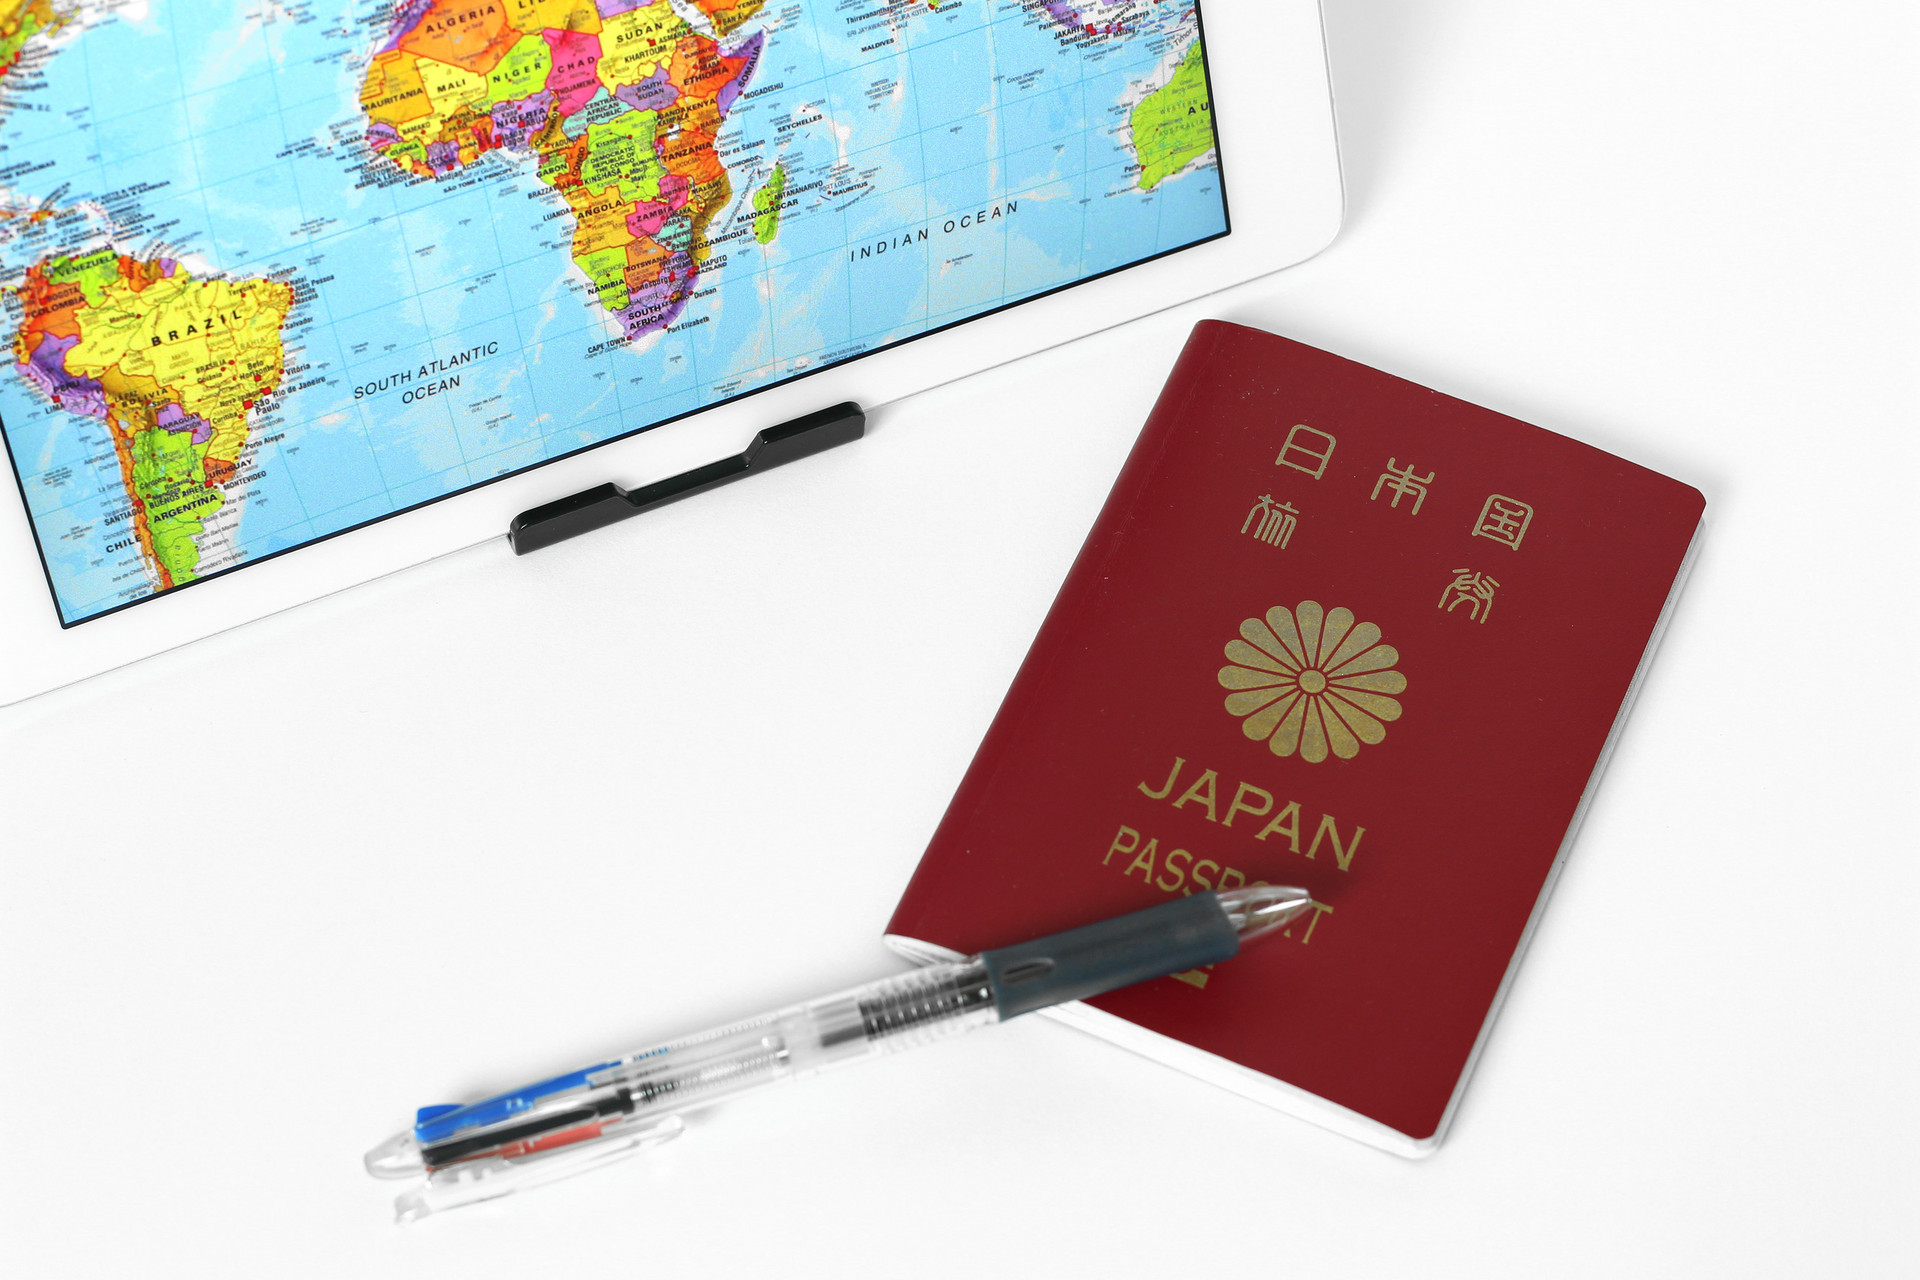 日本旅游签证简化政策1月4日正式实施 “双旦”出游日本最热